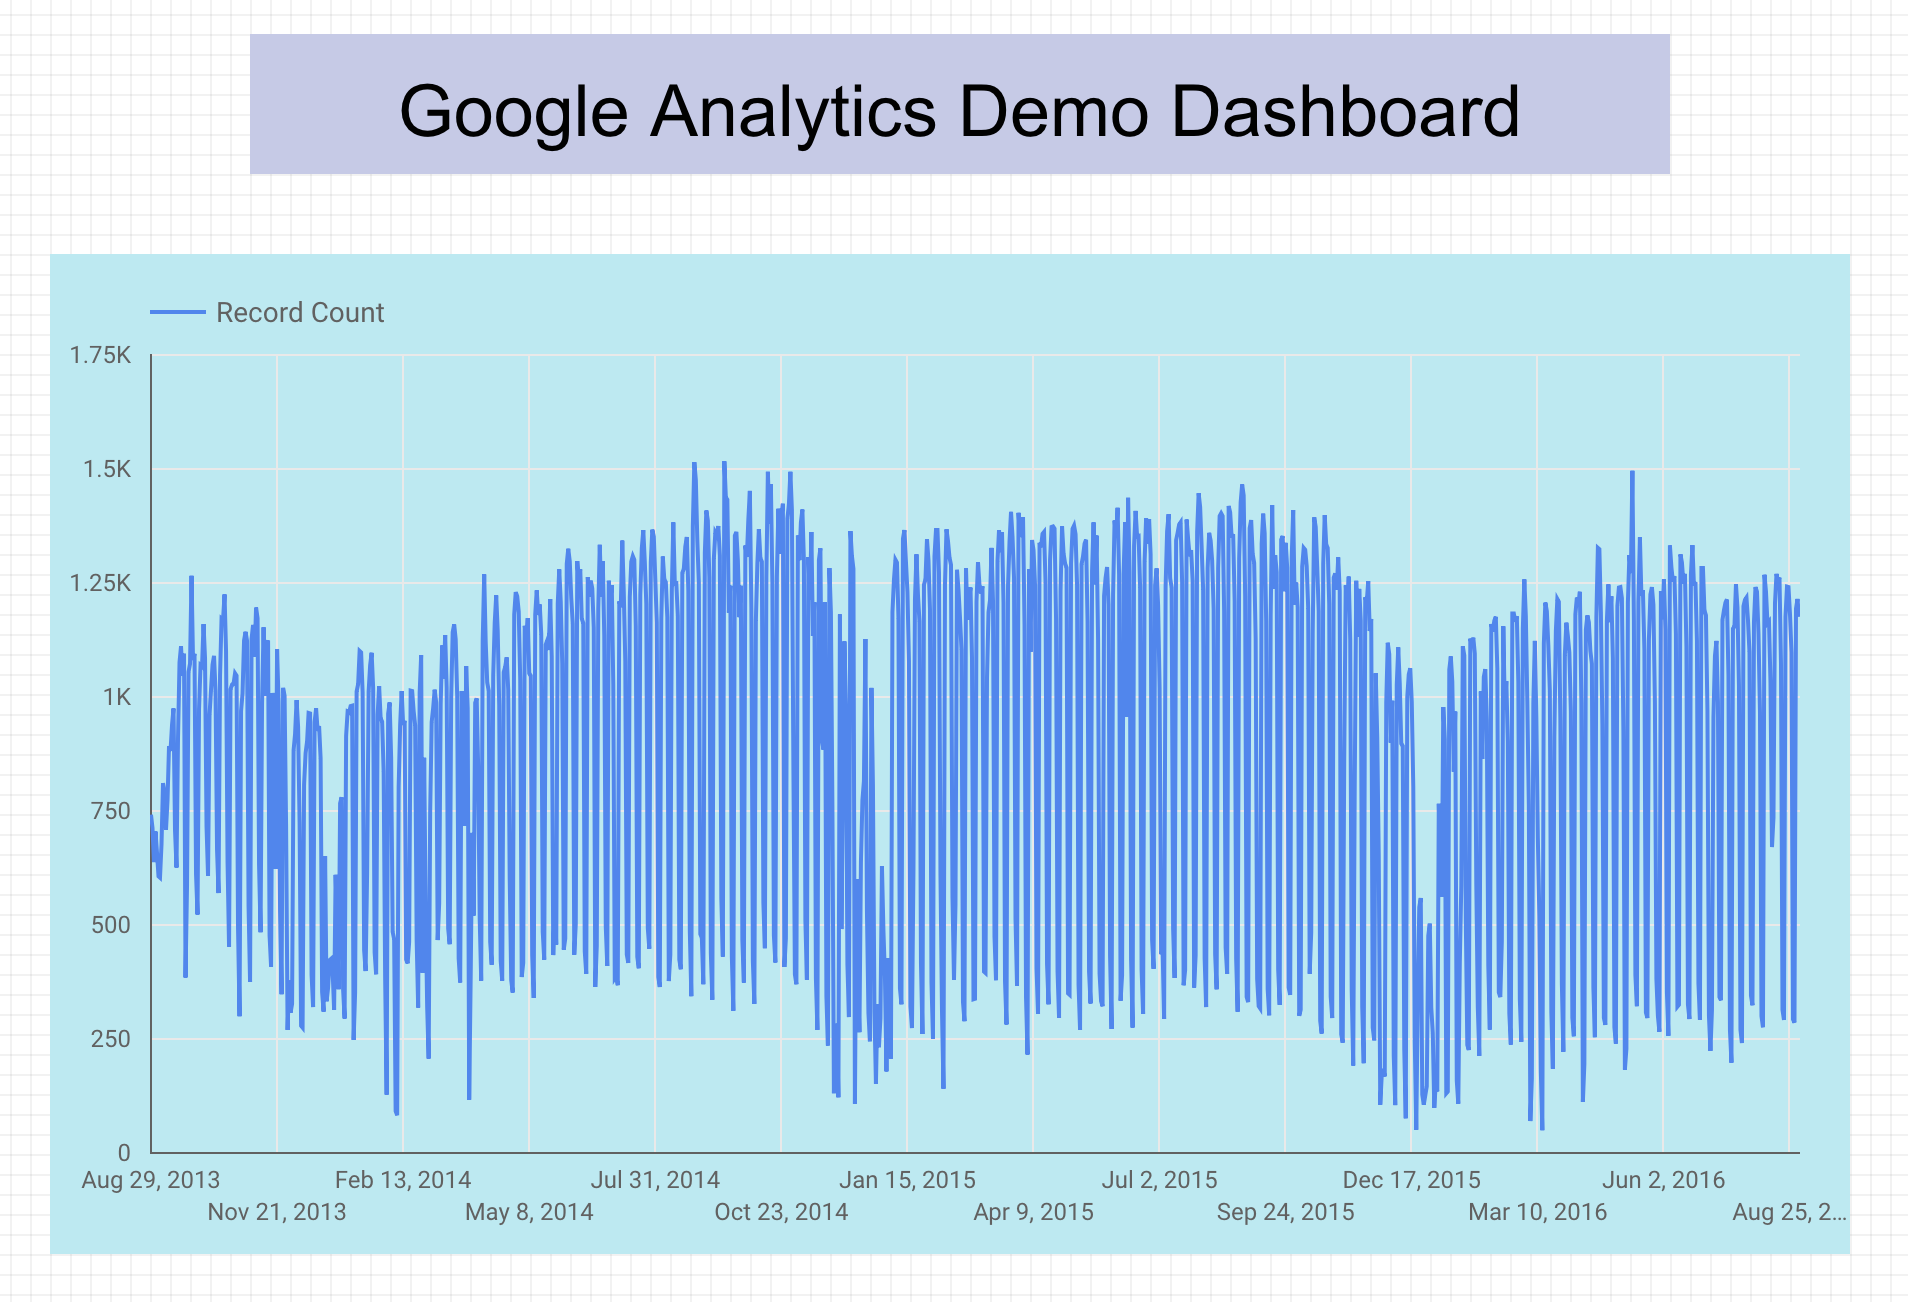 Gráfico de serie temporal llamado Panel de demostración de Google Analytics que muestra la cantidad de bicicletas de uso compartido usadas en San Francisco con el paso del tiempo